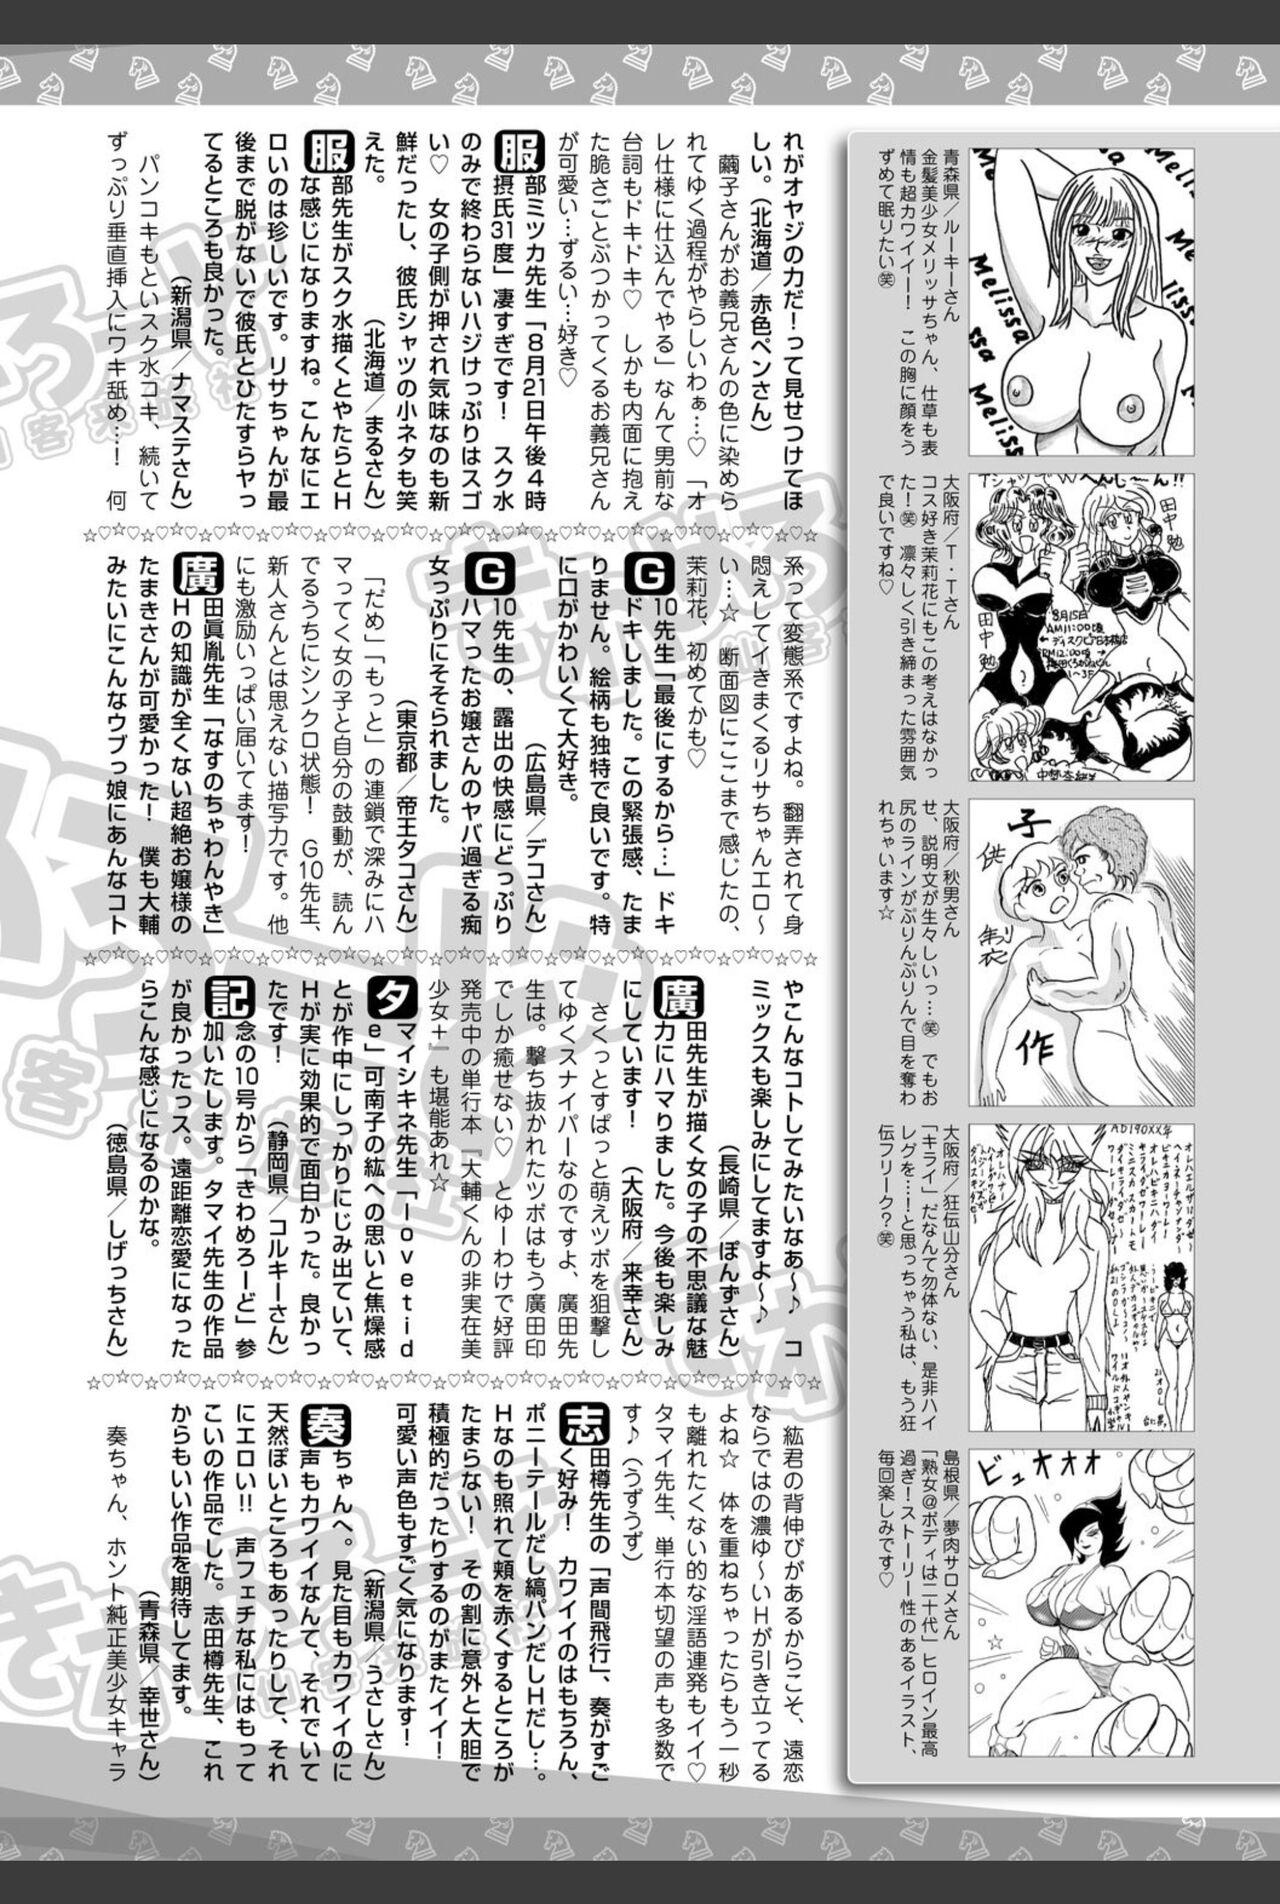 Bishoujo Kakumei KIWAME 2010-12 Vol.11 211